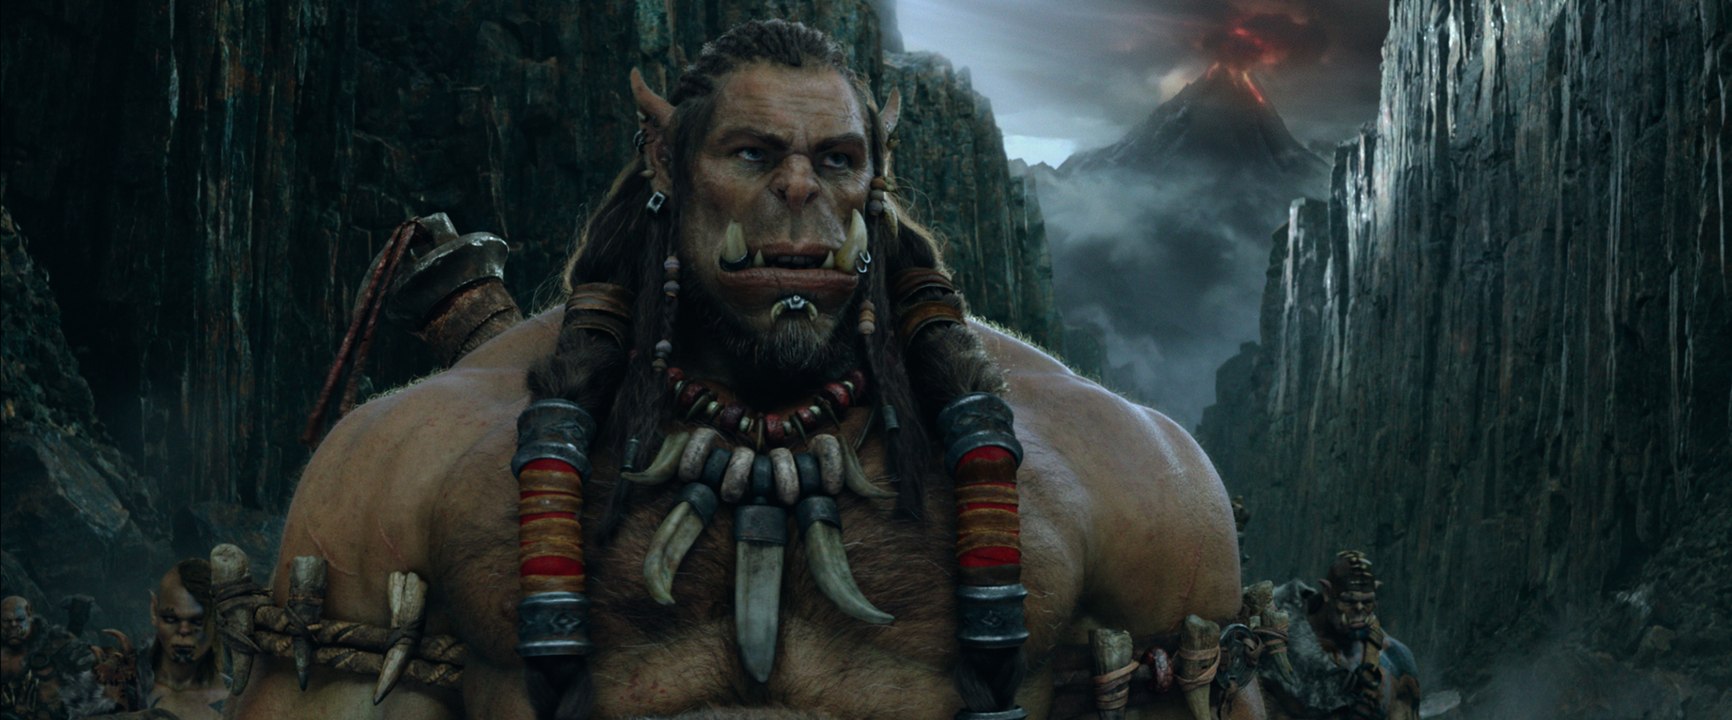 Warcraft The Beginning - Trailer 2 (Deutsch) HD